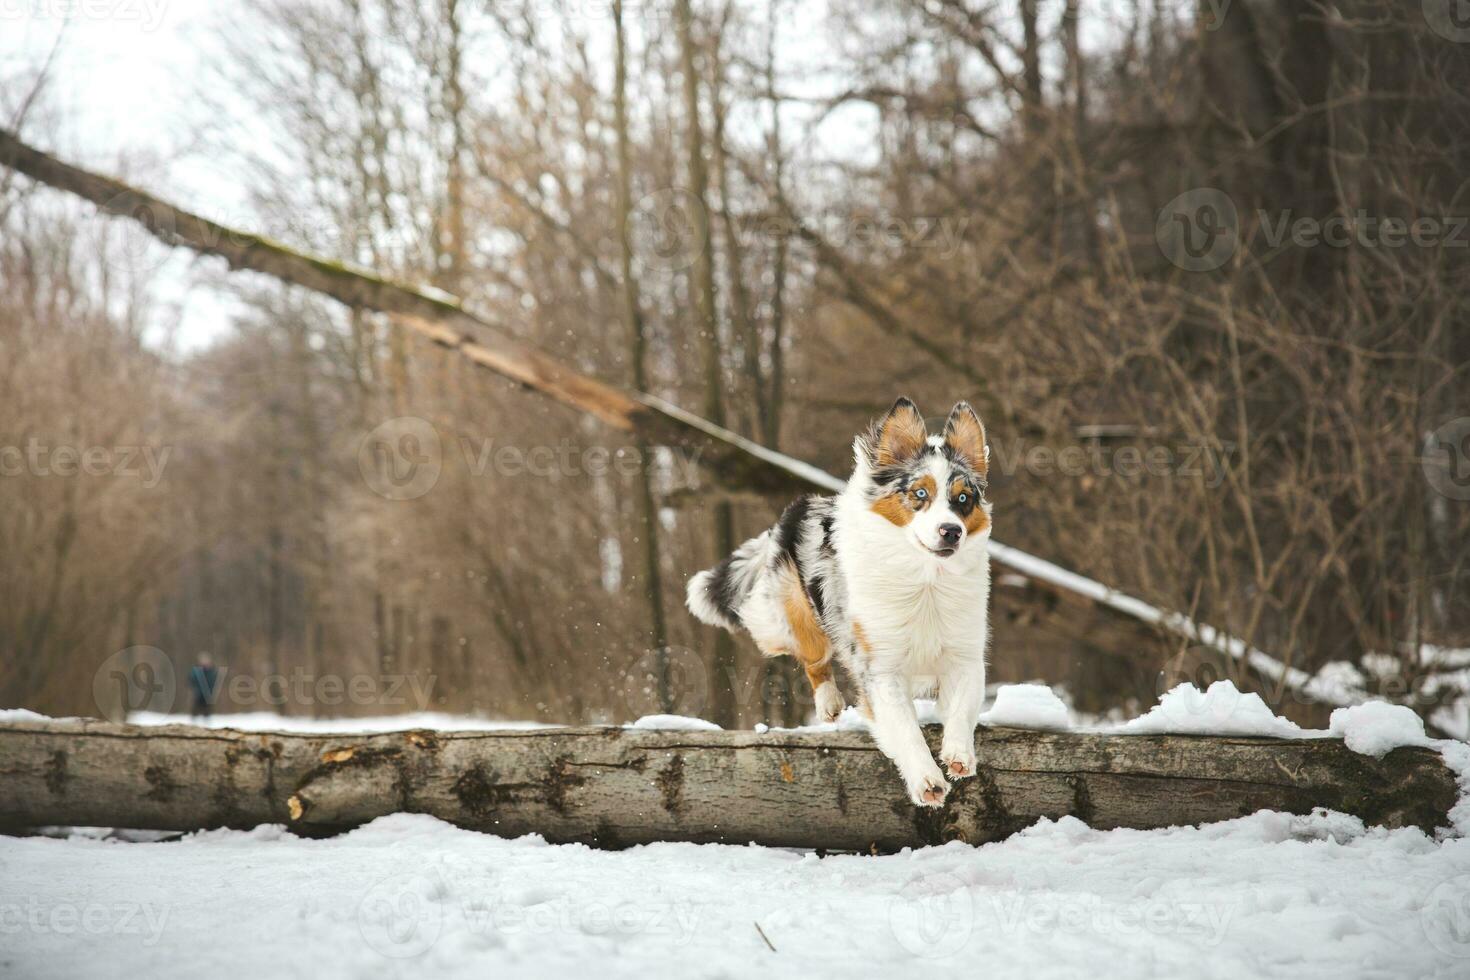 zuiver geluk van een Australisch herder puppy jumping over- een gedaald boom in een besneeuwd Woud gedurende december in de Tsjechisch republiek. detailopname van een hond jumping foto